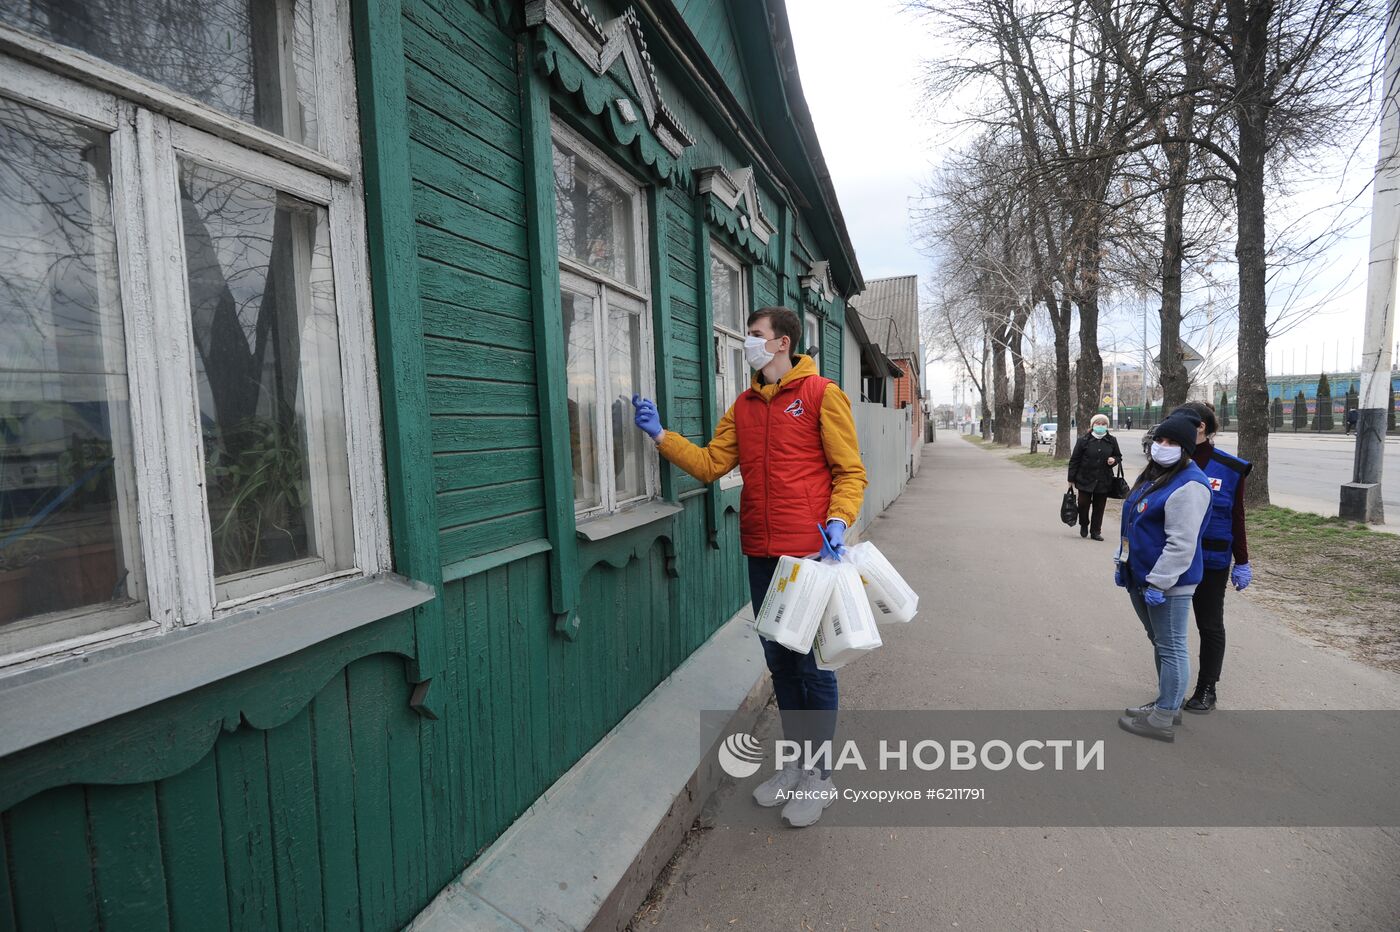 Работа волонтерских центров в городах России